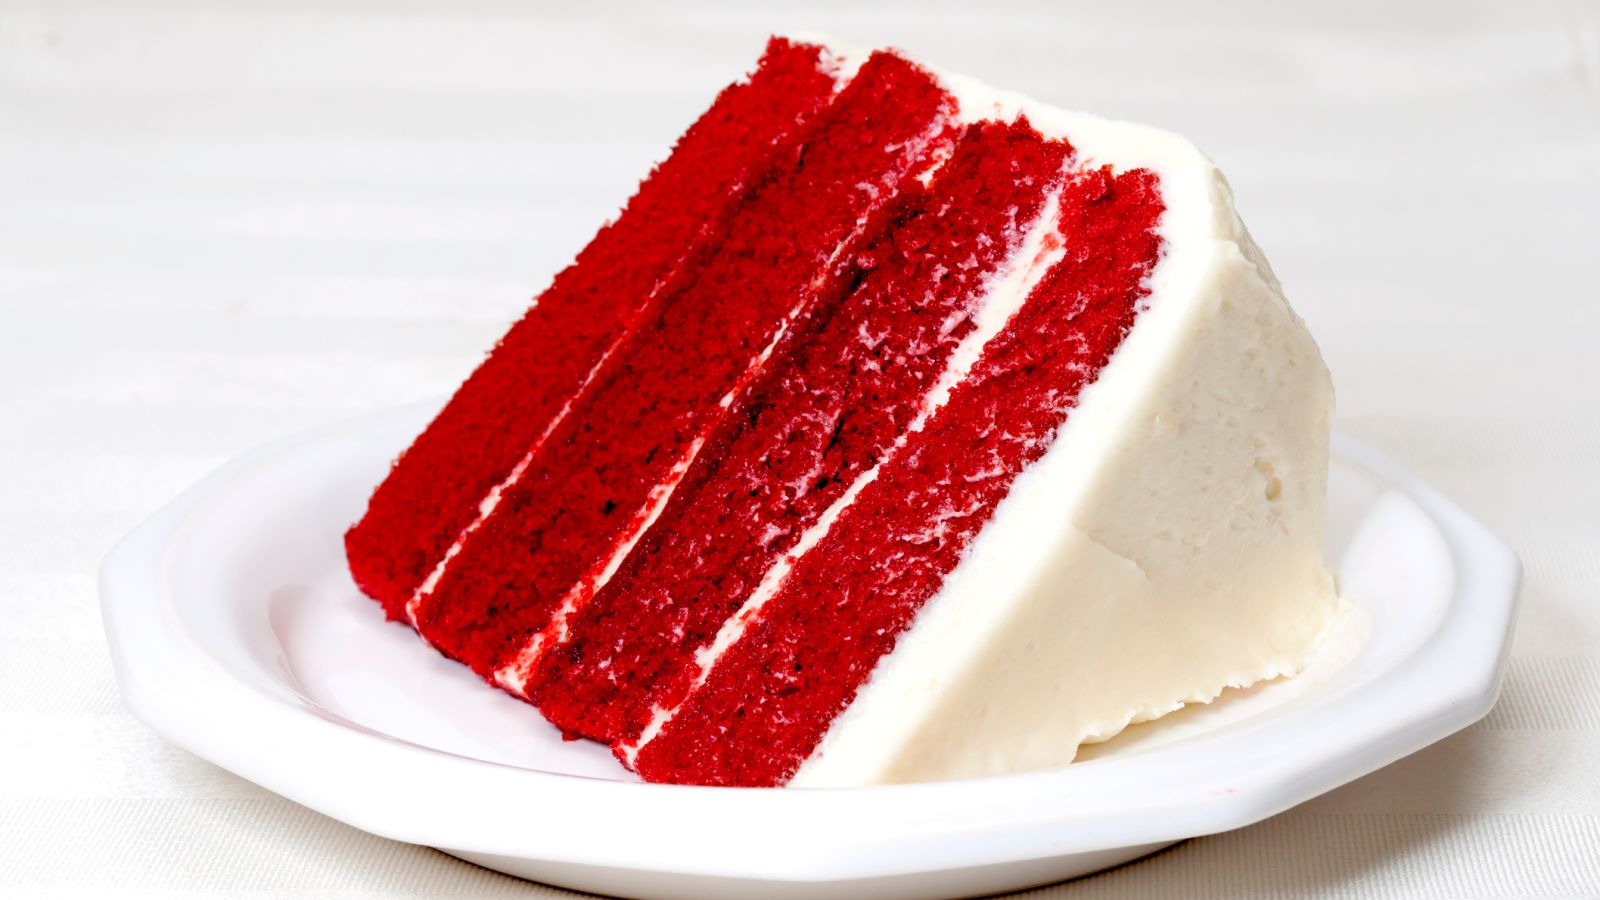 Food safety regulations_red velvet cake